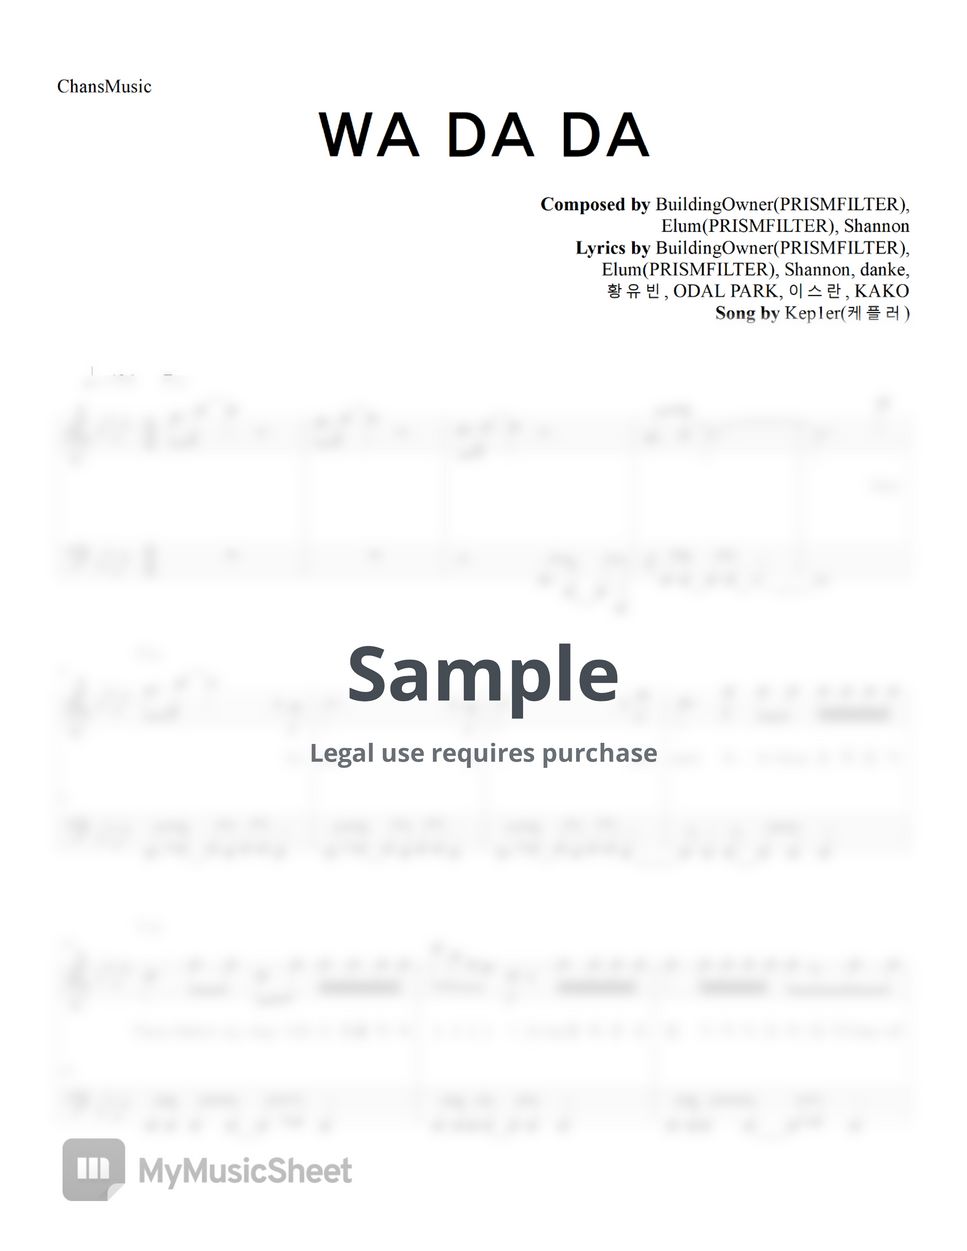 Kep1er - WA DA DA (Easy Version) by ChansMusic